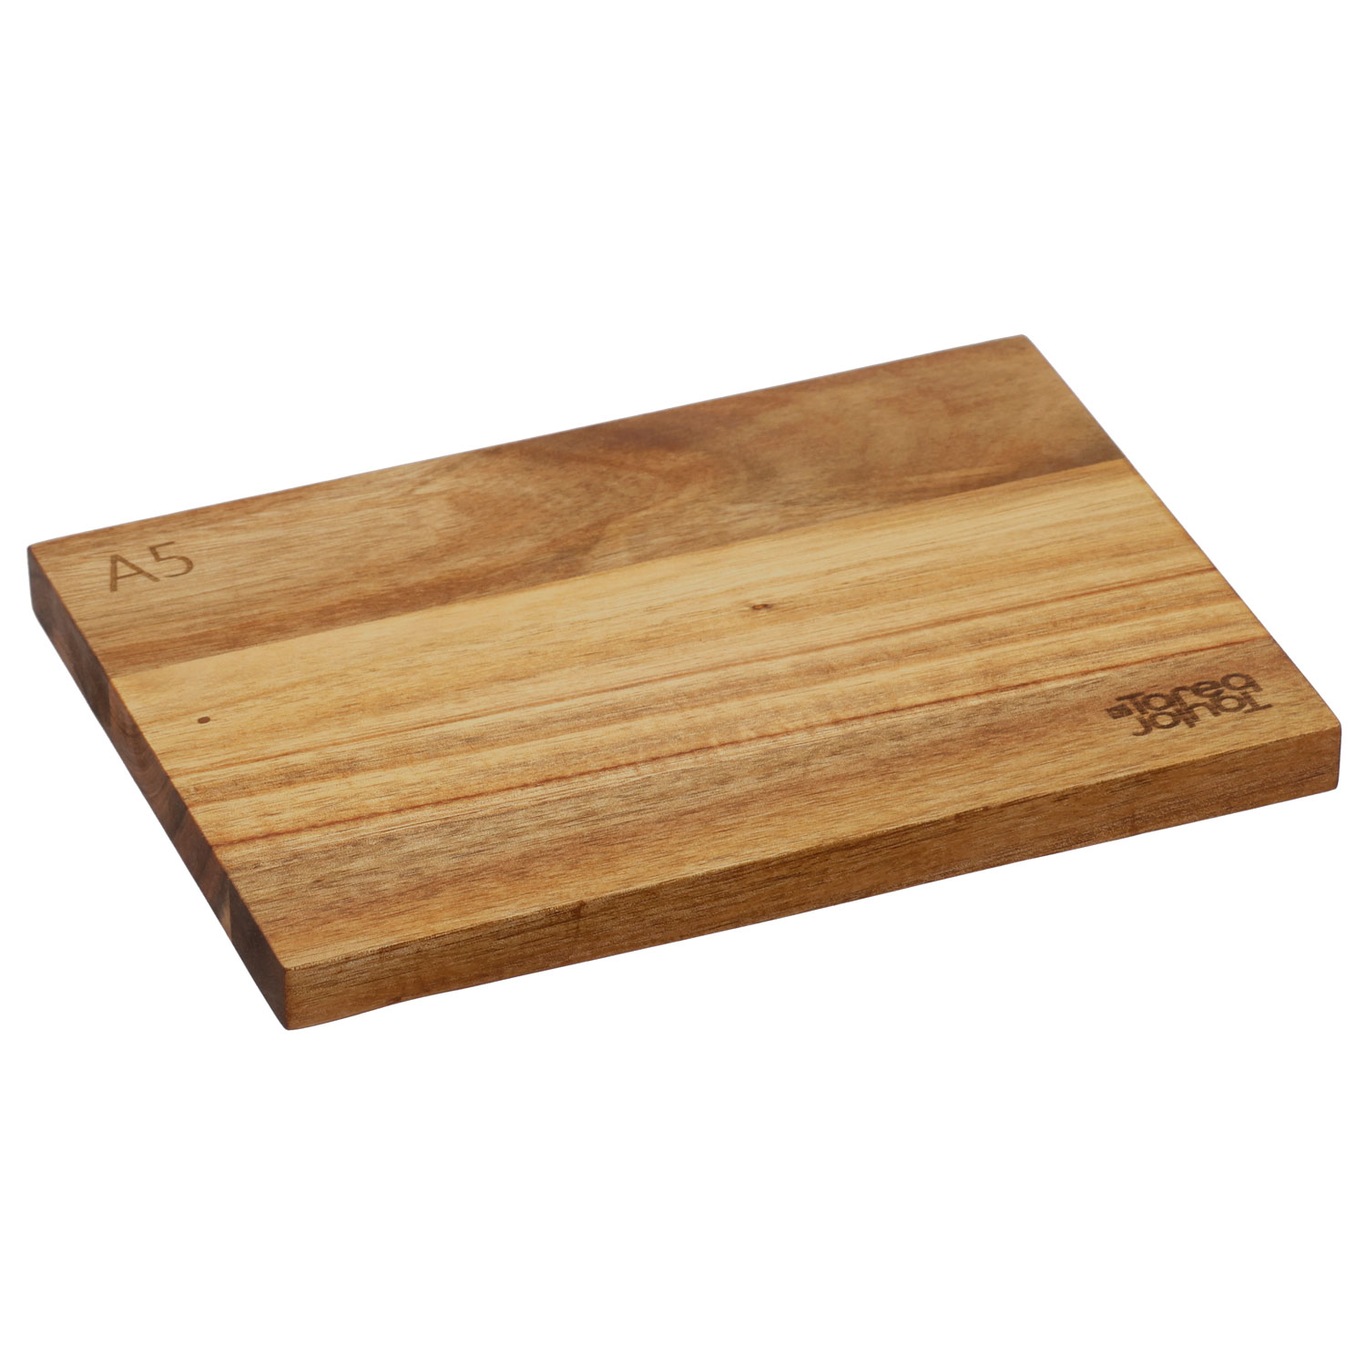 Tarragon Chopping Board, 14x21 cm